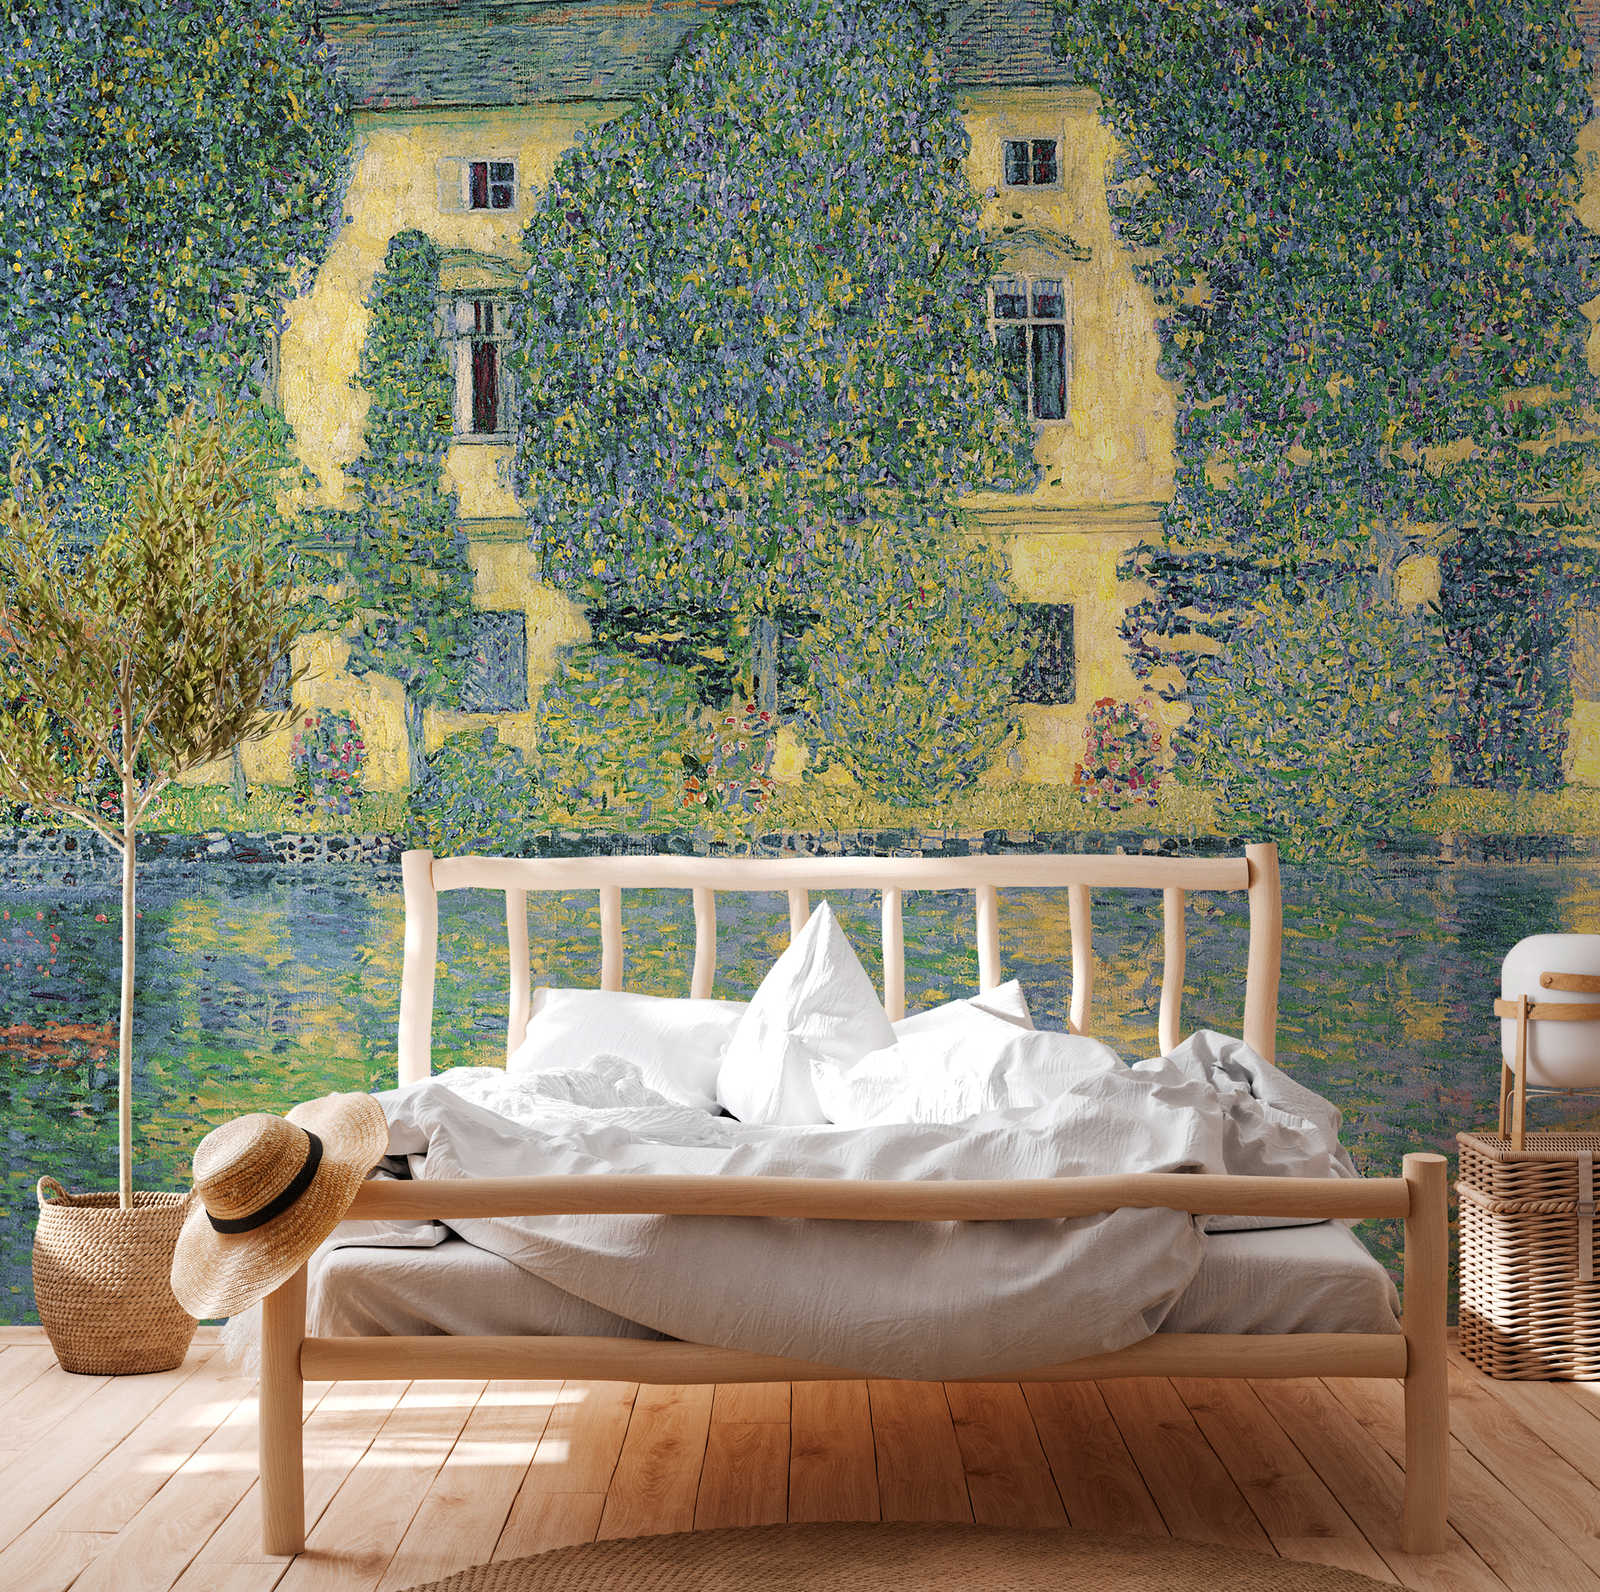             Fotomurali "La camera del castello sul lago Attersee III" di Gustav Klimt
        